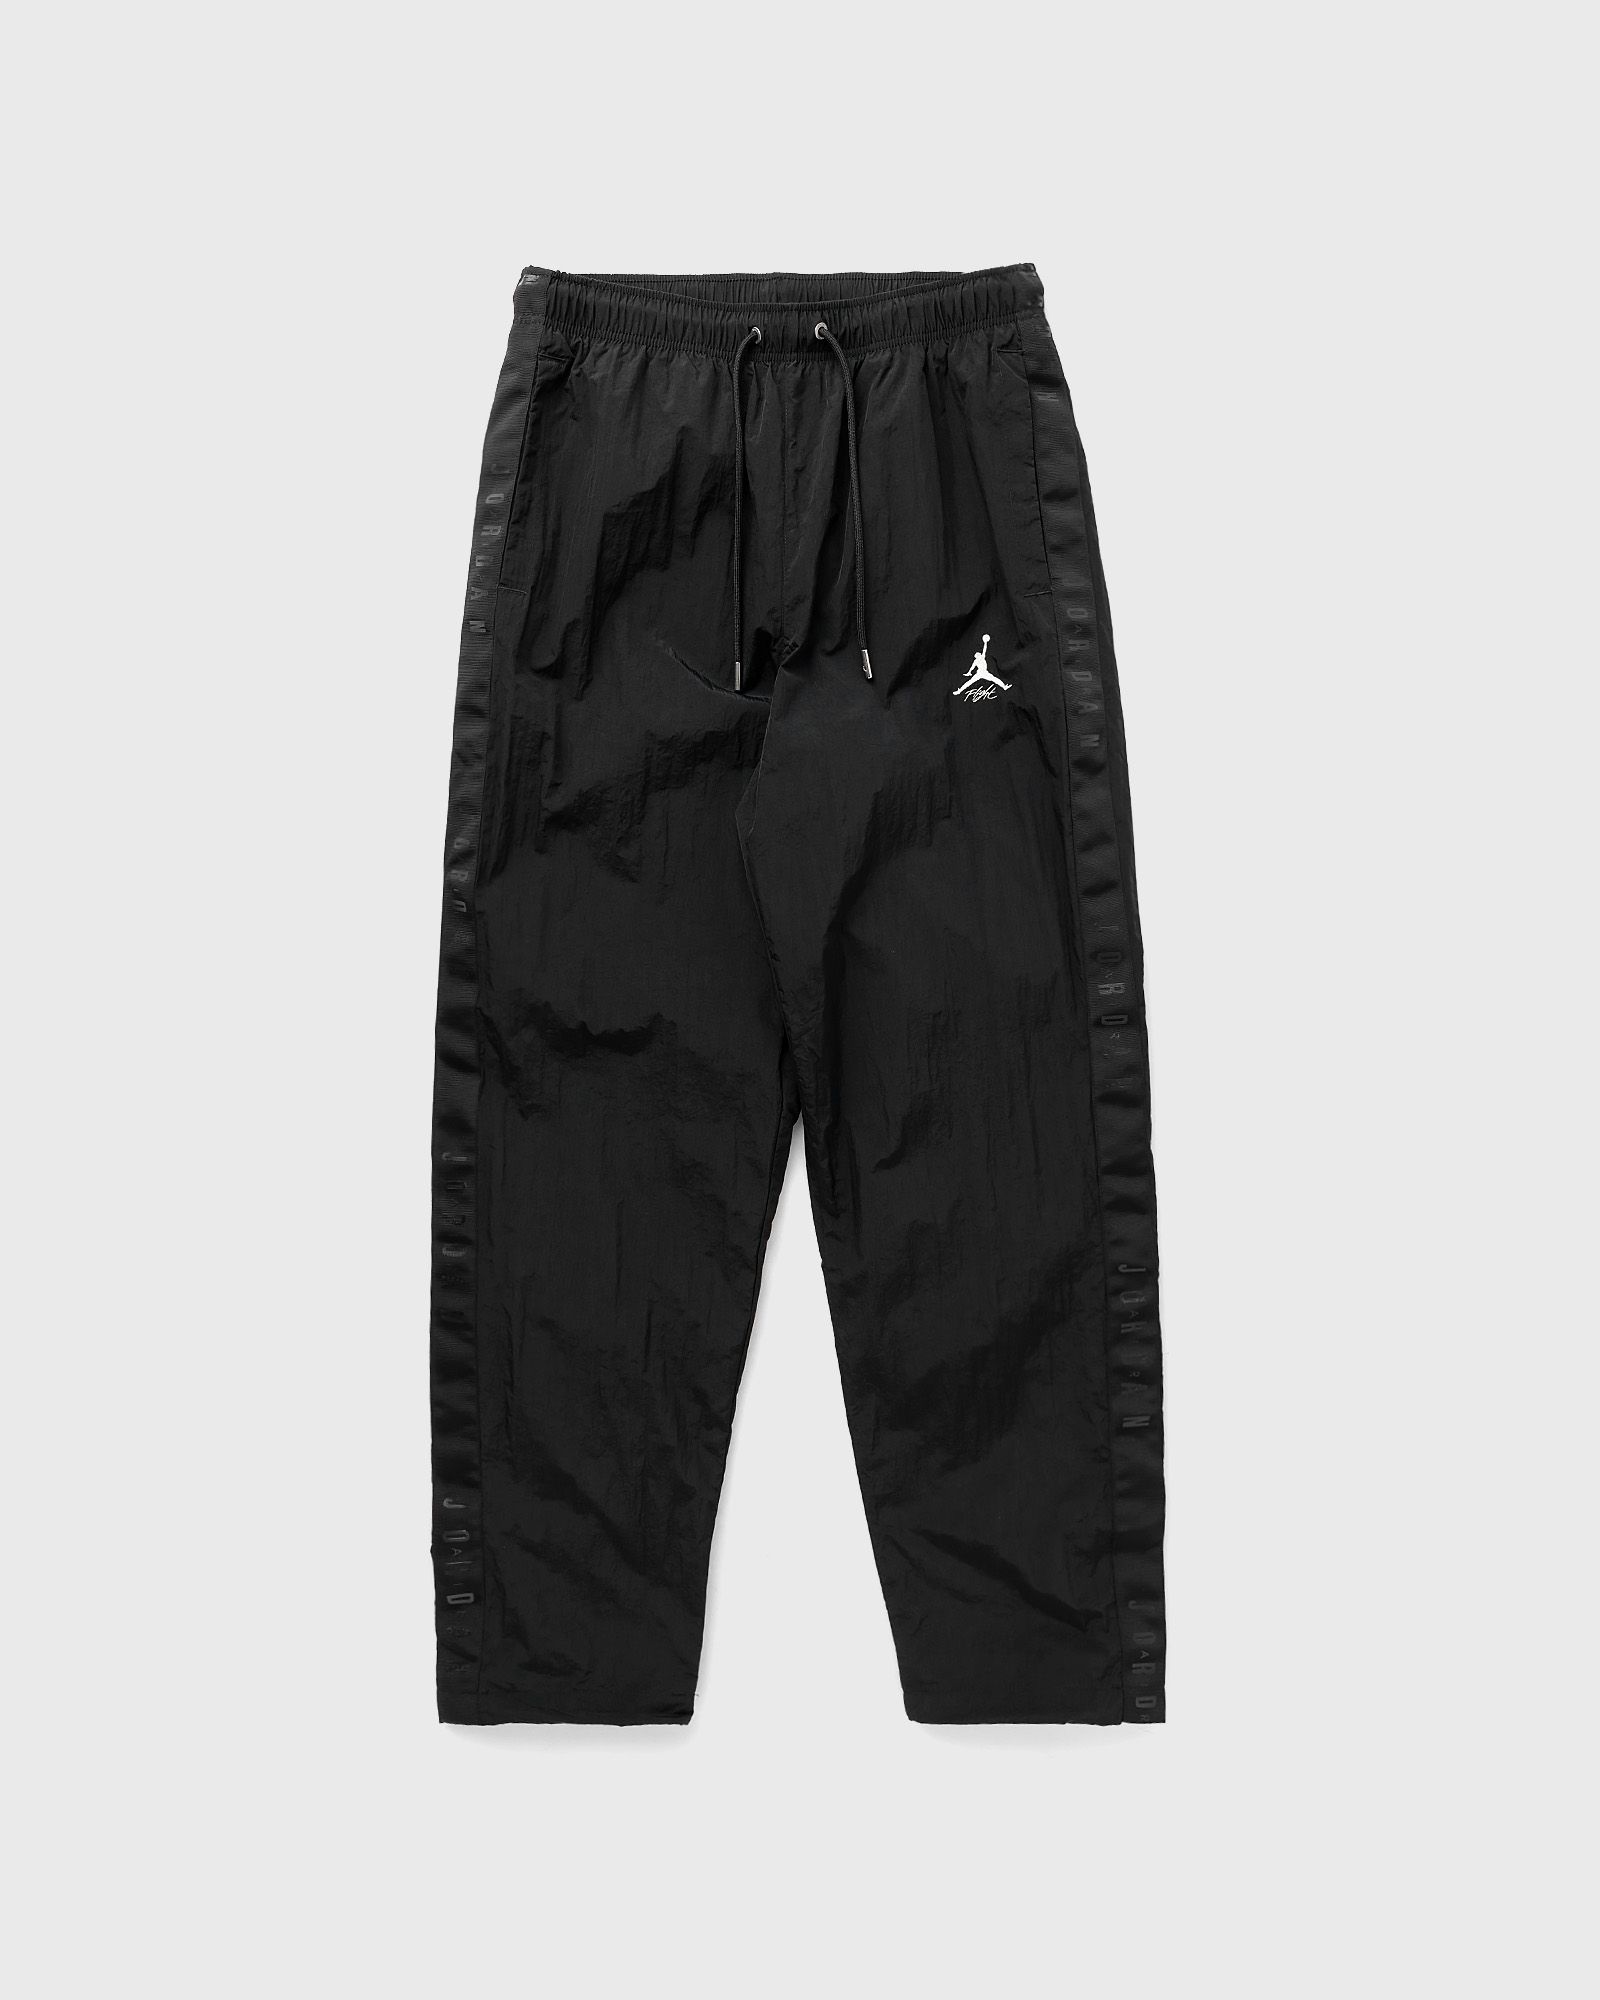 Jordan - essentials warmup pants men track pants black in größe:m